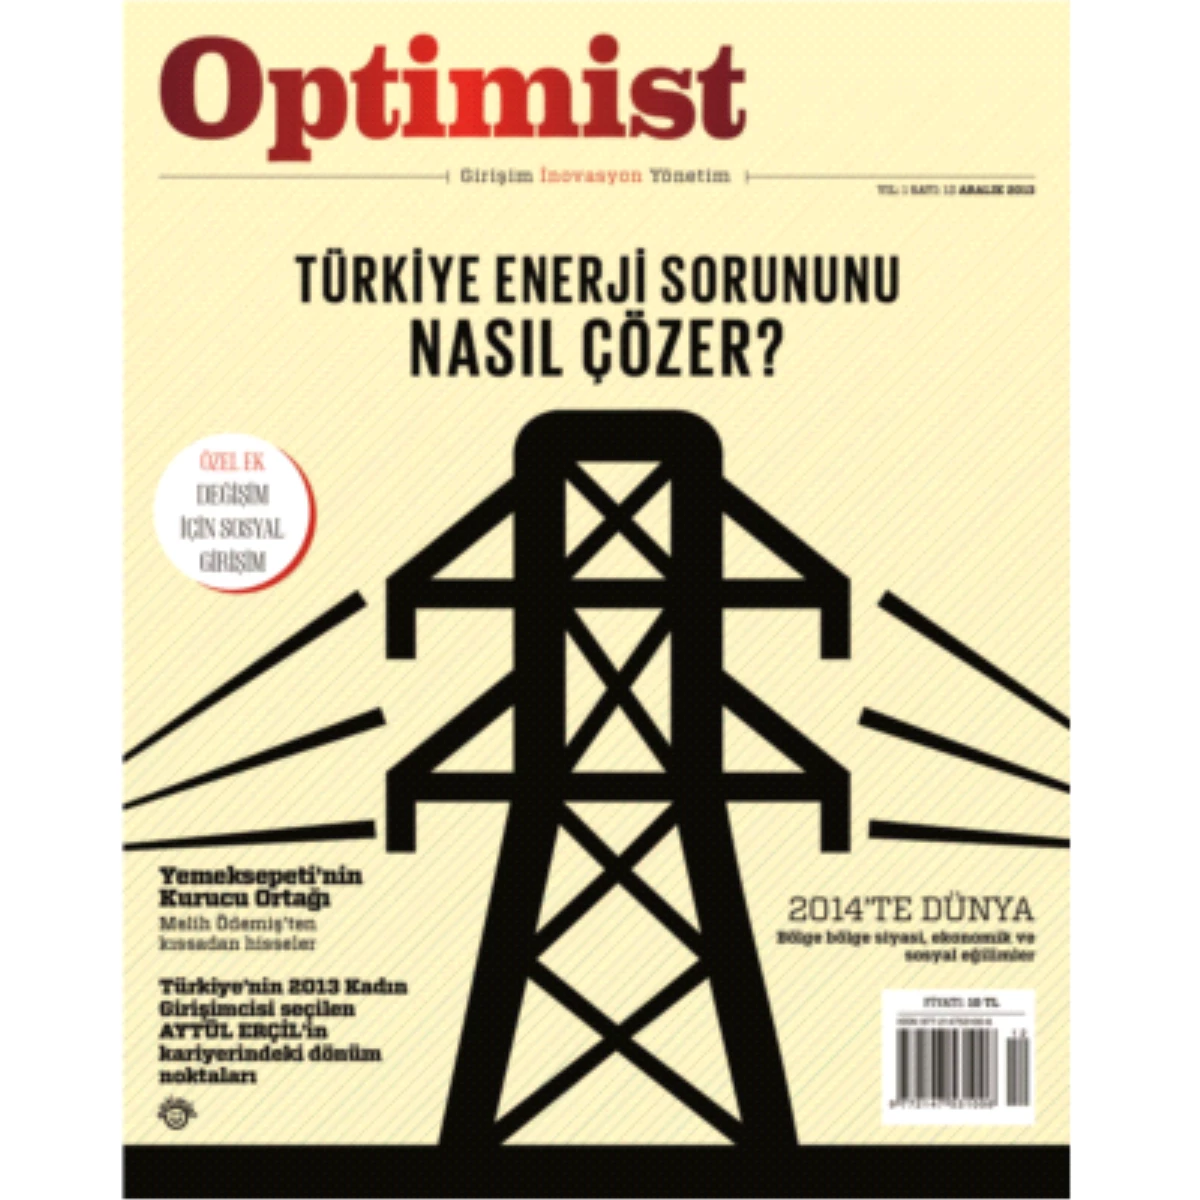 Girişim, İnovasyon ve Yönetim Dergisi Optimist\'in Aralık Sayısı Çıktı